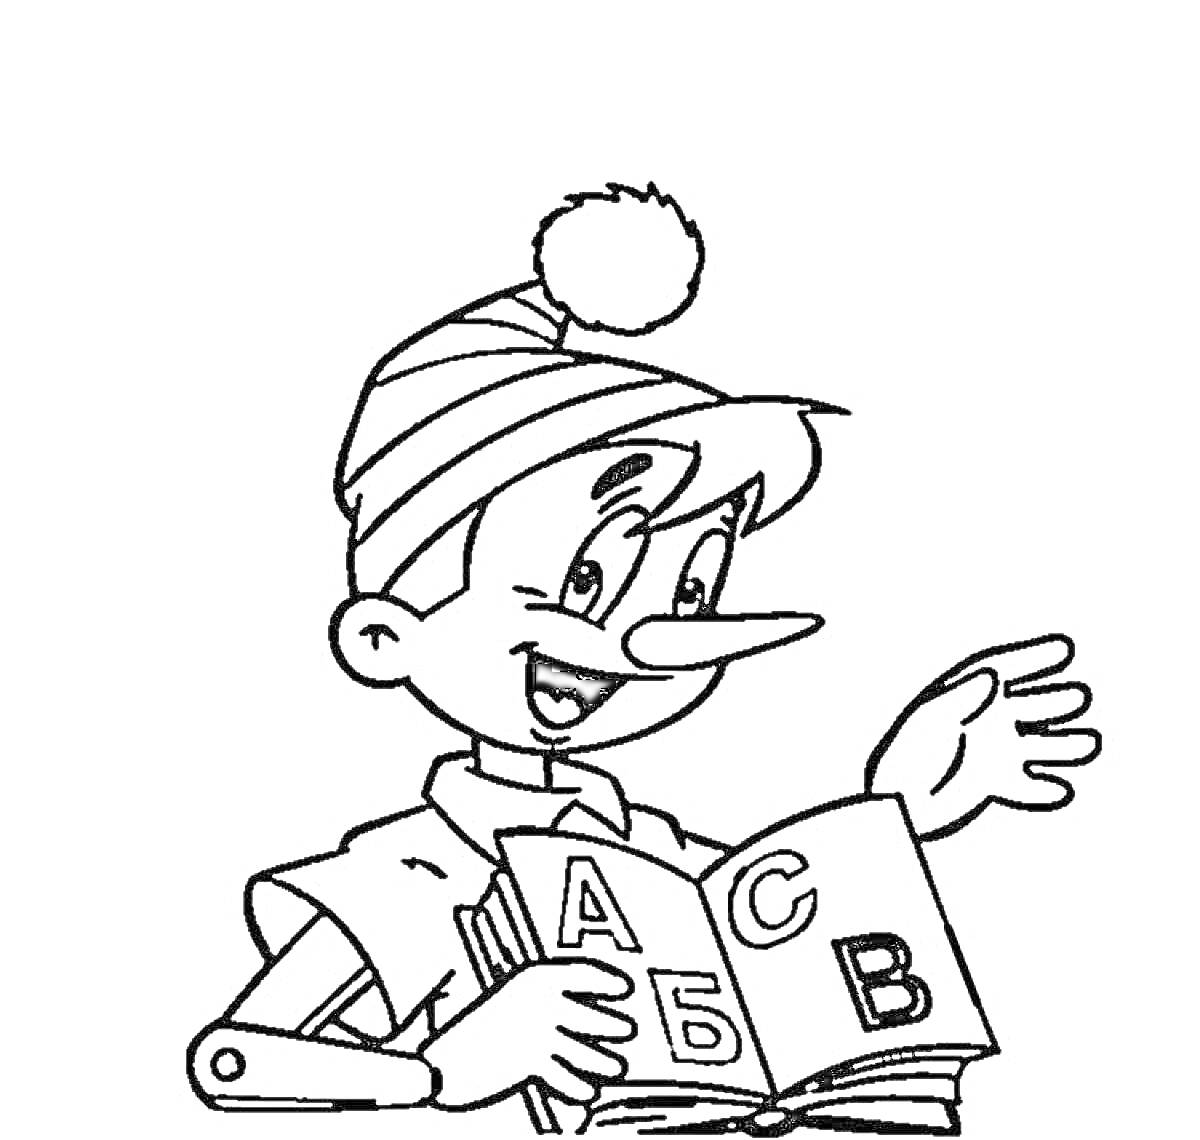 Раскраска Геройчик в шапке с помпоном читает книгу с буквами А, Б и В